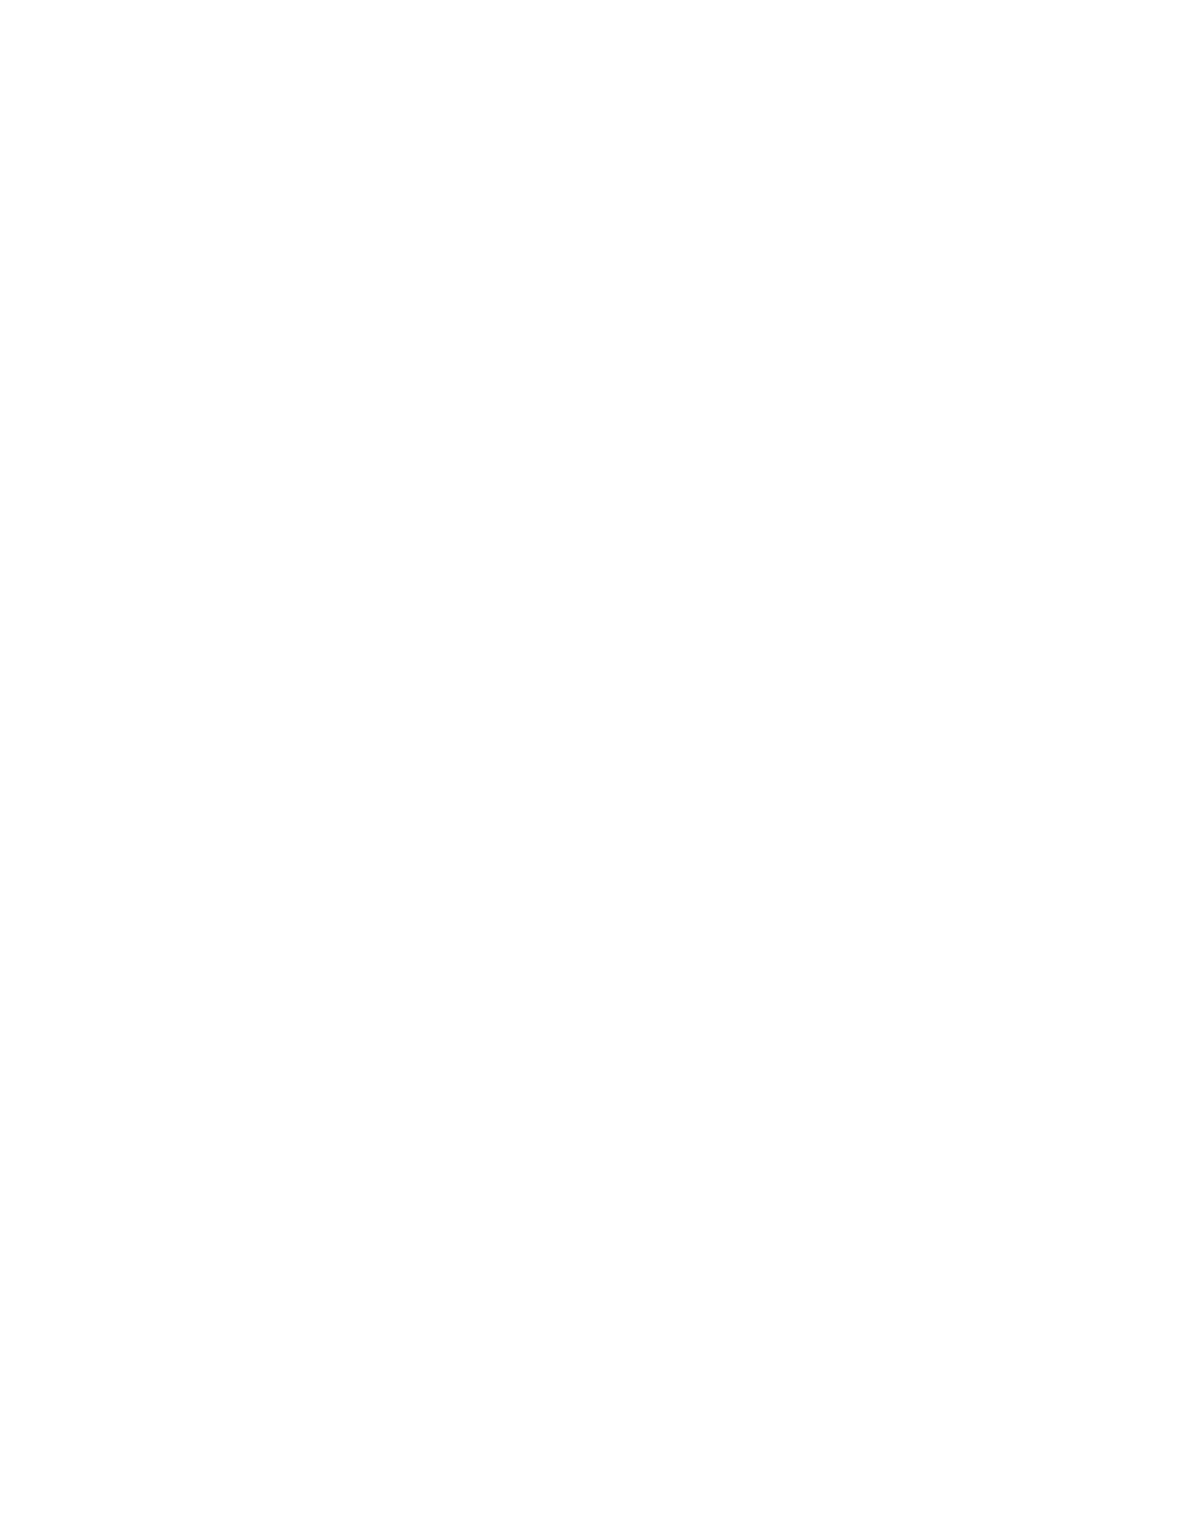 Express logo for dark backgrounds (transparent PNG)